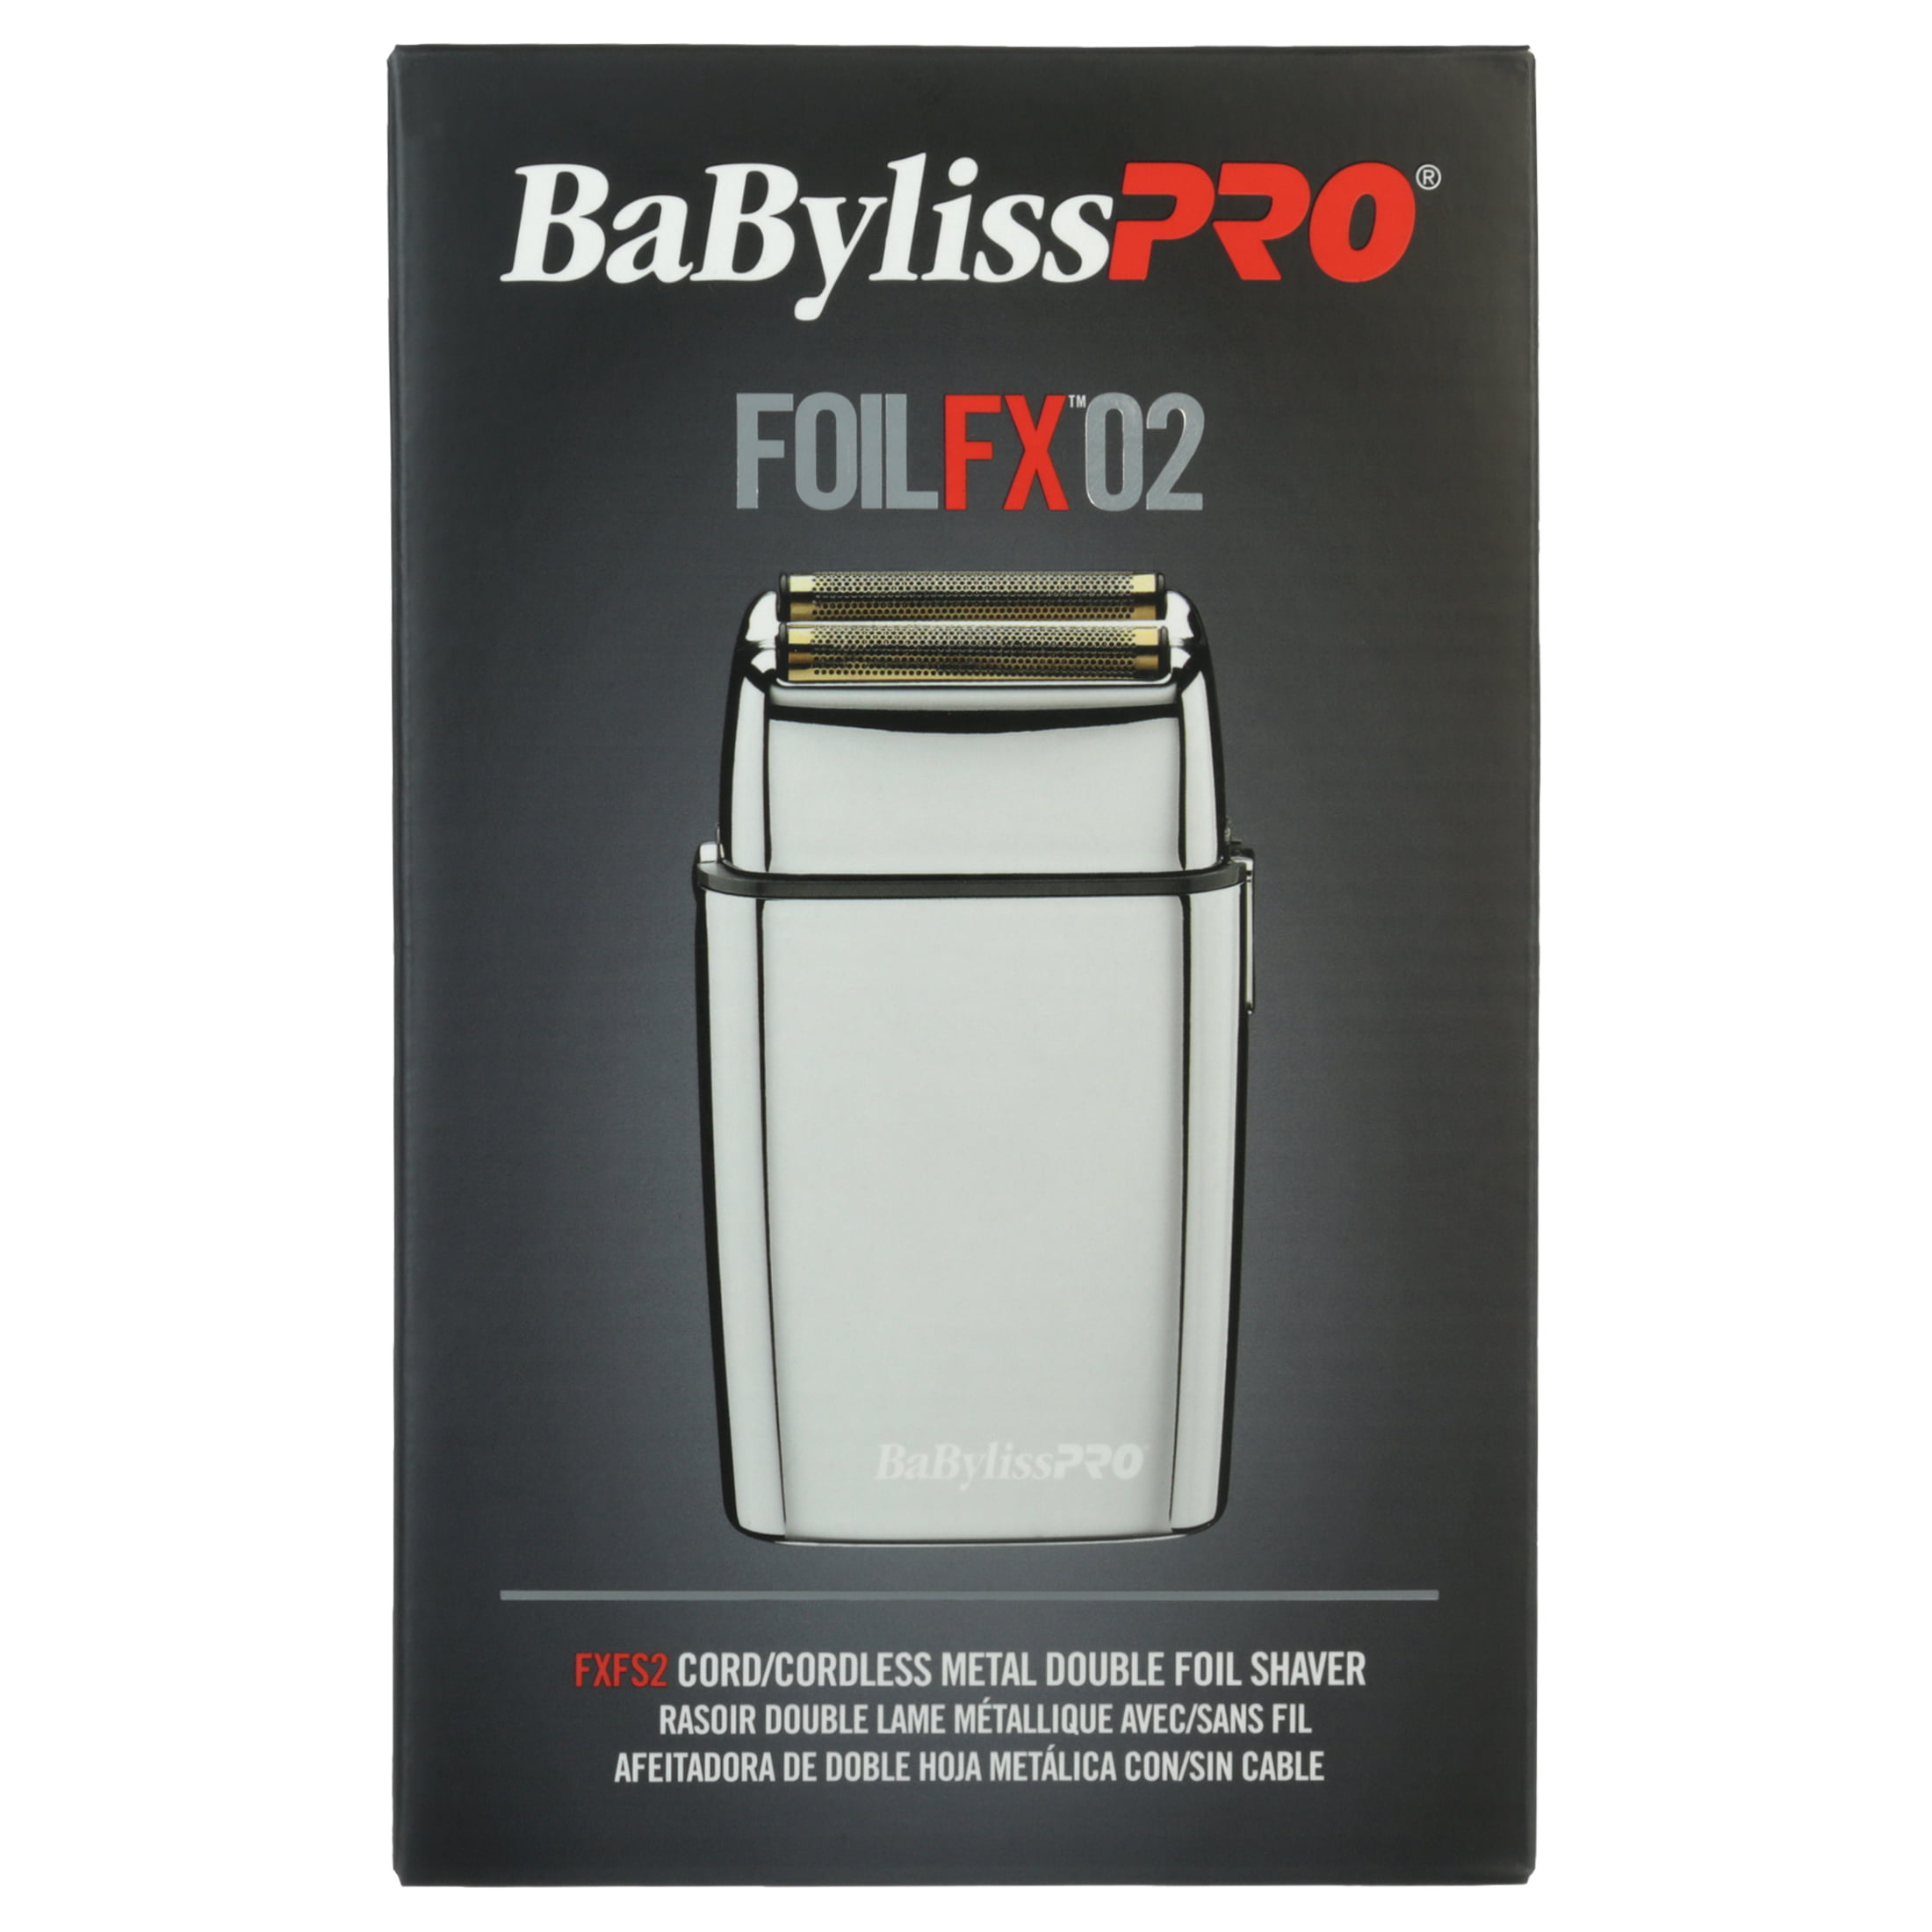 BaBylissPRO Foilfx02 Cordless Metal Double Foil Shaver